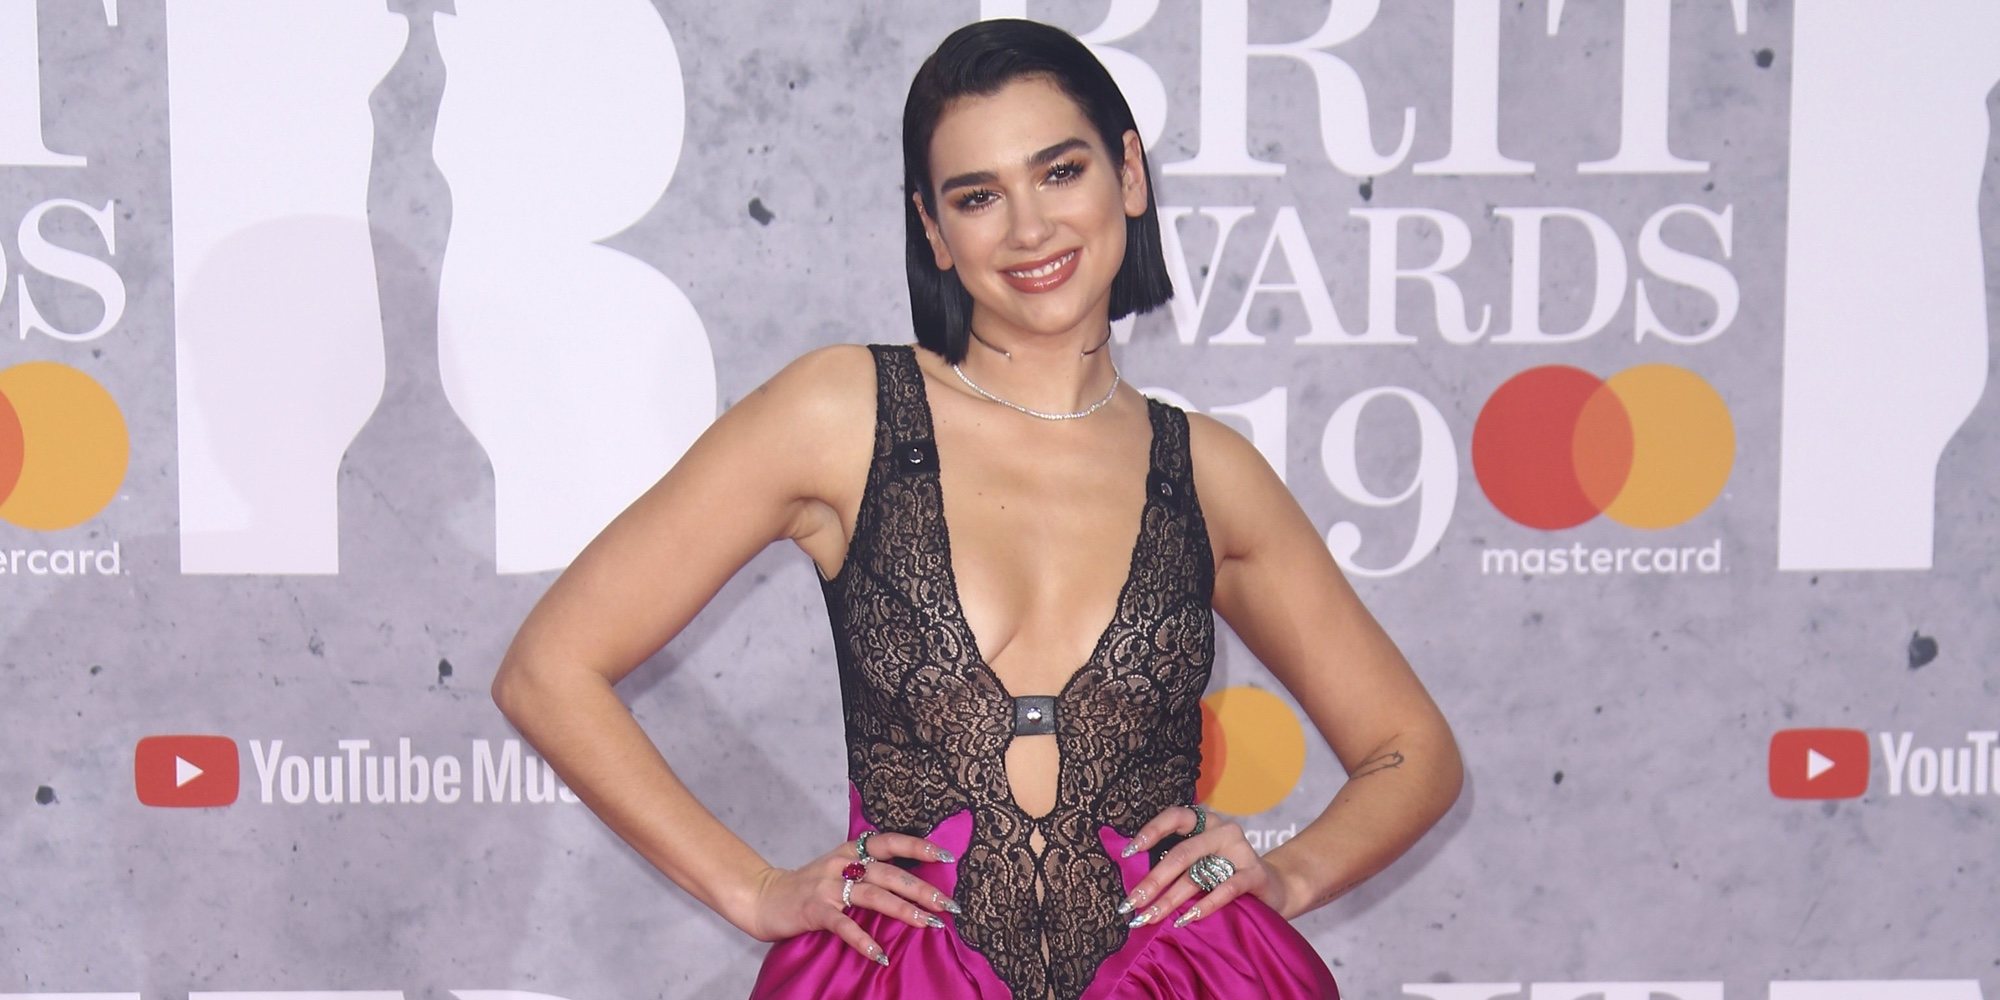 Acusan a Dua Lipa de comportarse como una diva en los Brit Awards 2019